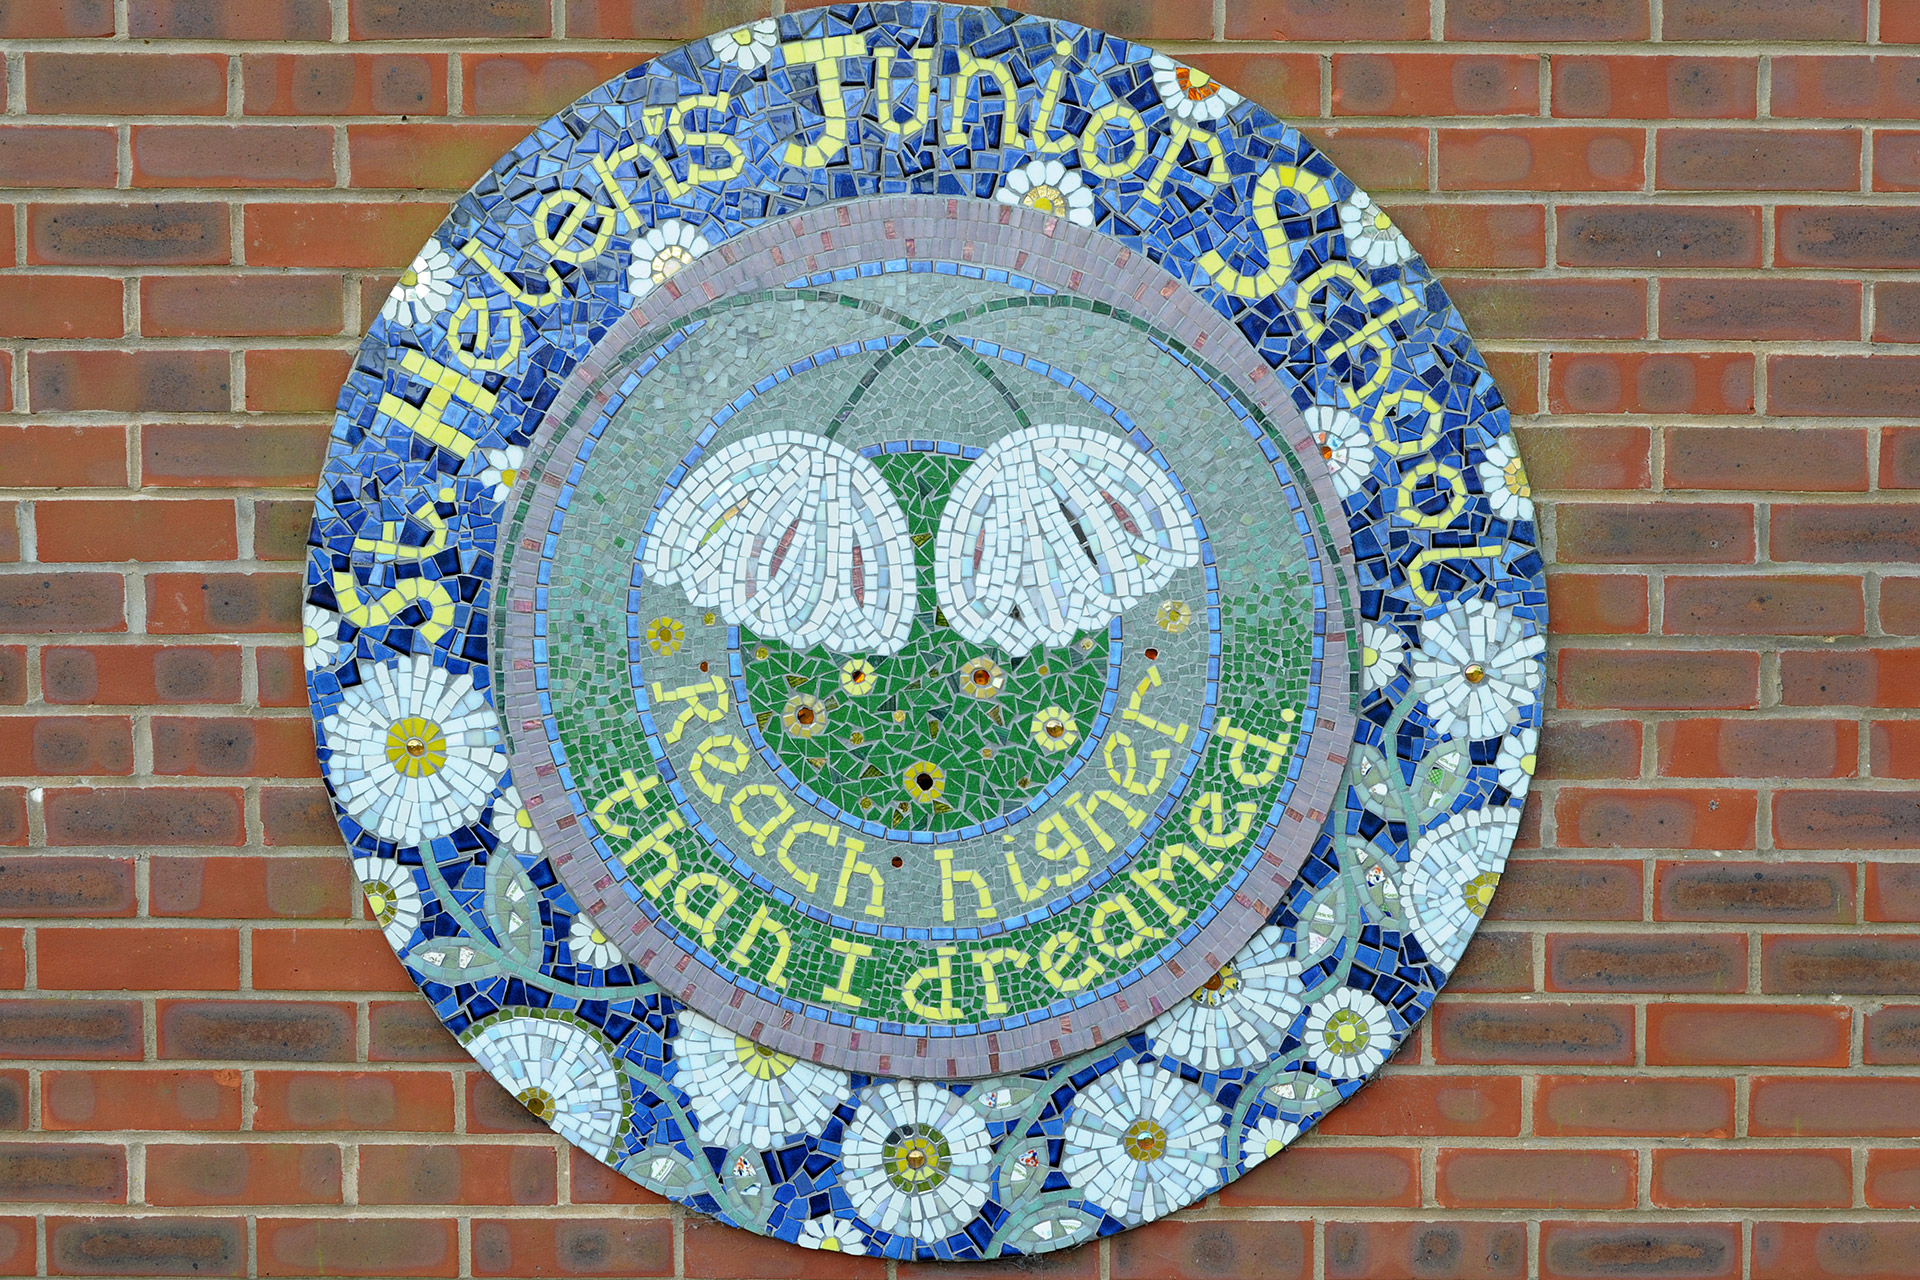 St Helen's Junior School